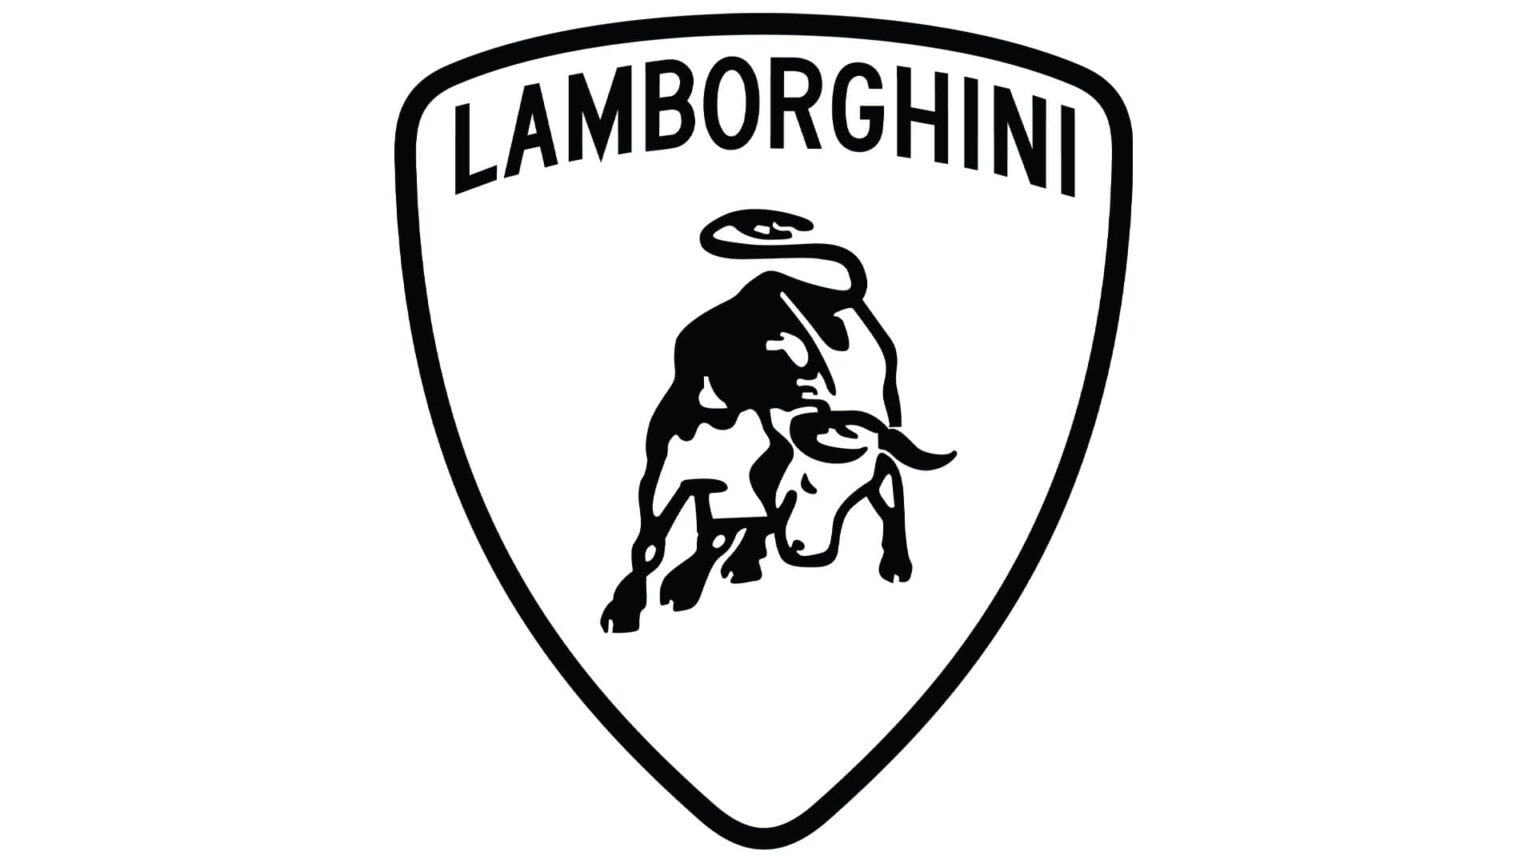 Lamborghini Logo 4K Wallpaper 4k Ultra 高清壁纸 | 桌面背景 | 3840x2160 | ID:883831 - Wallpaper Abyss